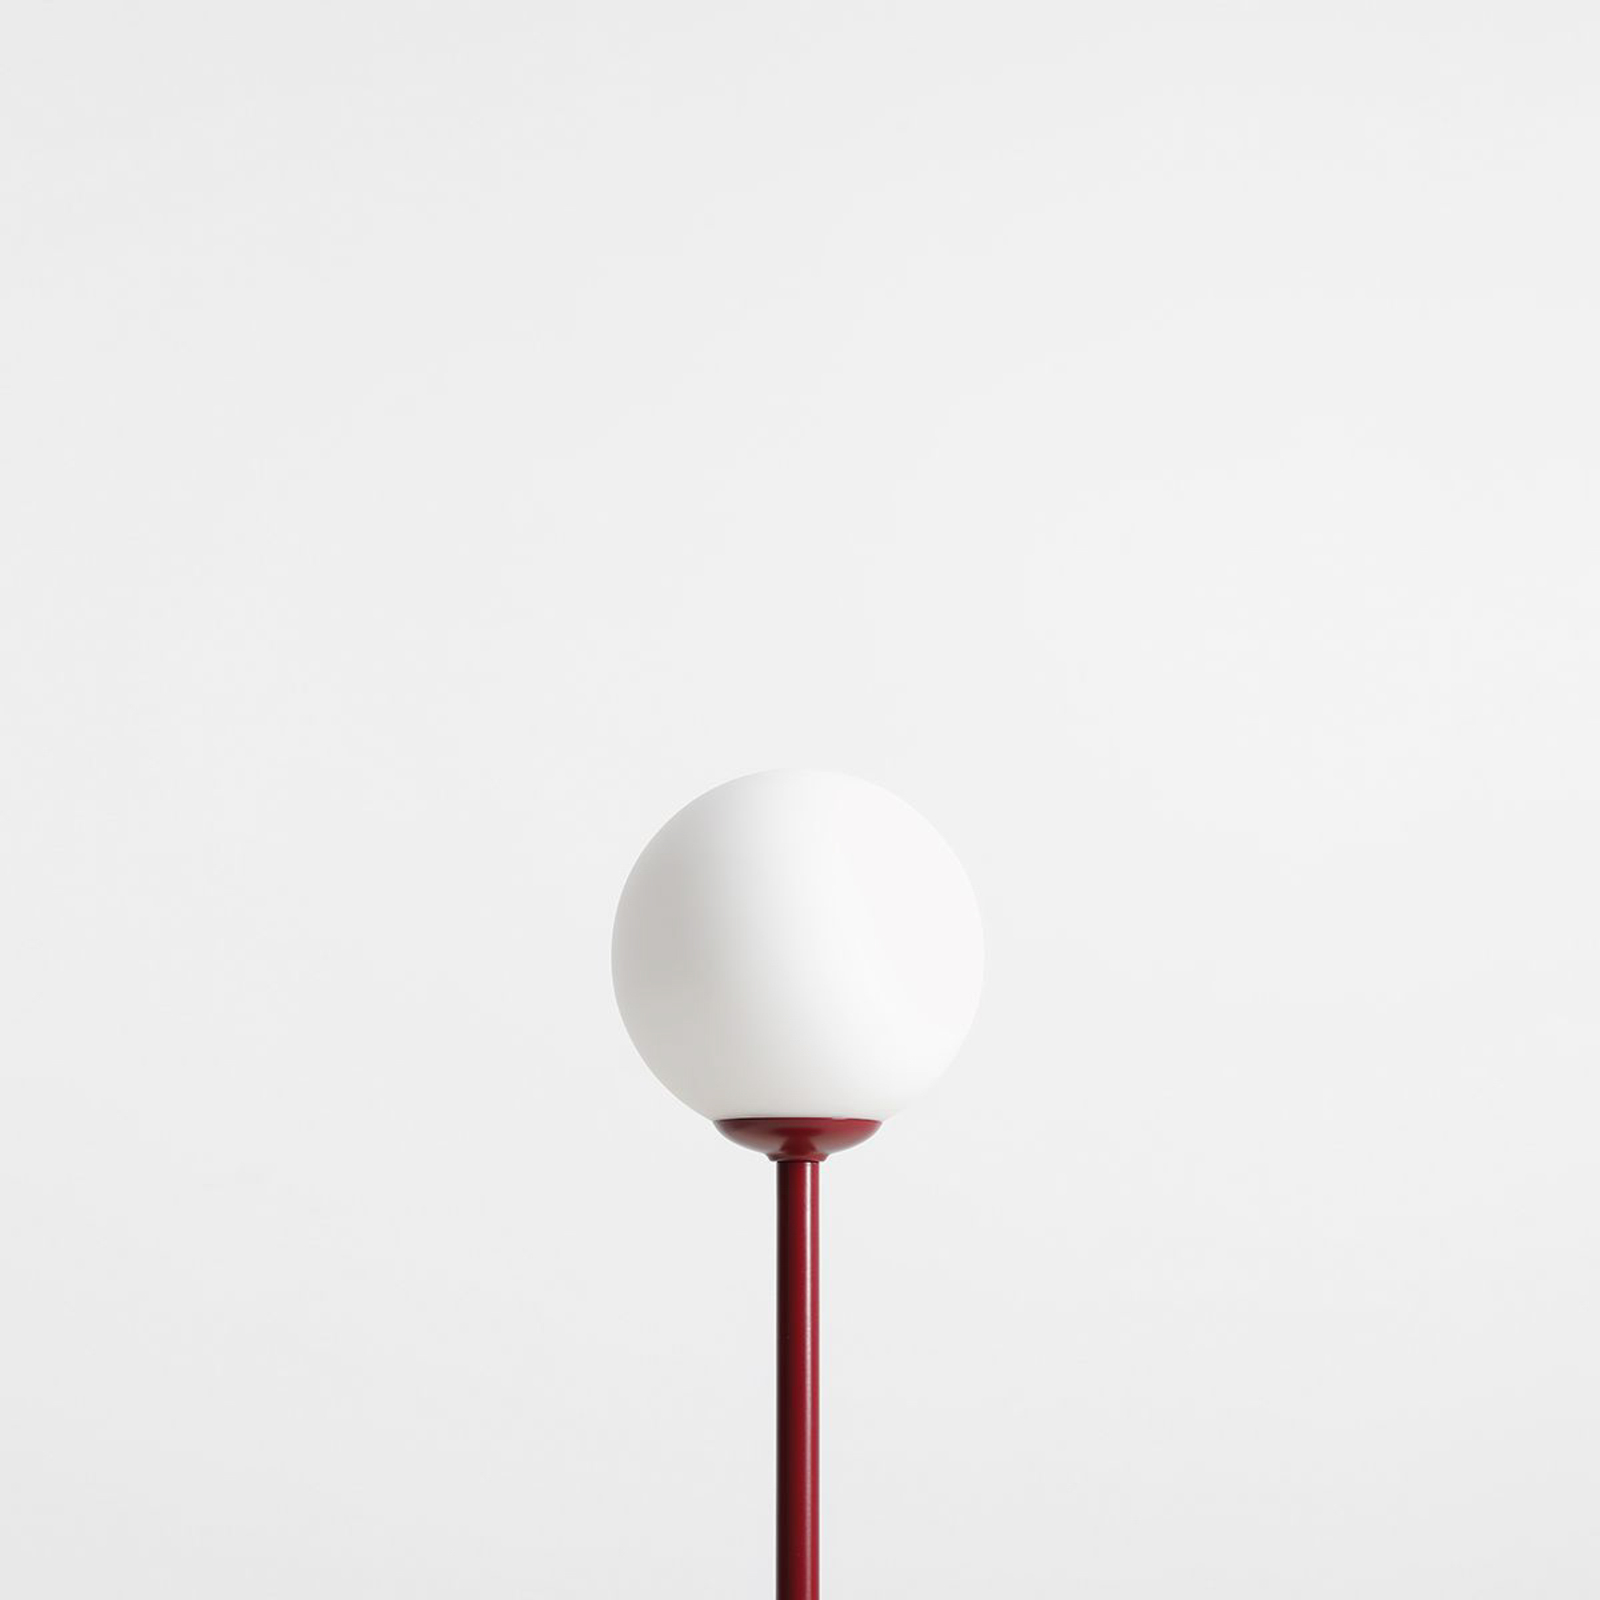 Stolní lampa Joel, výška 35 cm, červená/bílá